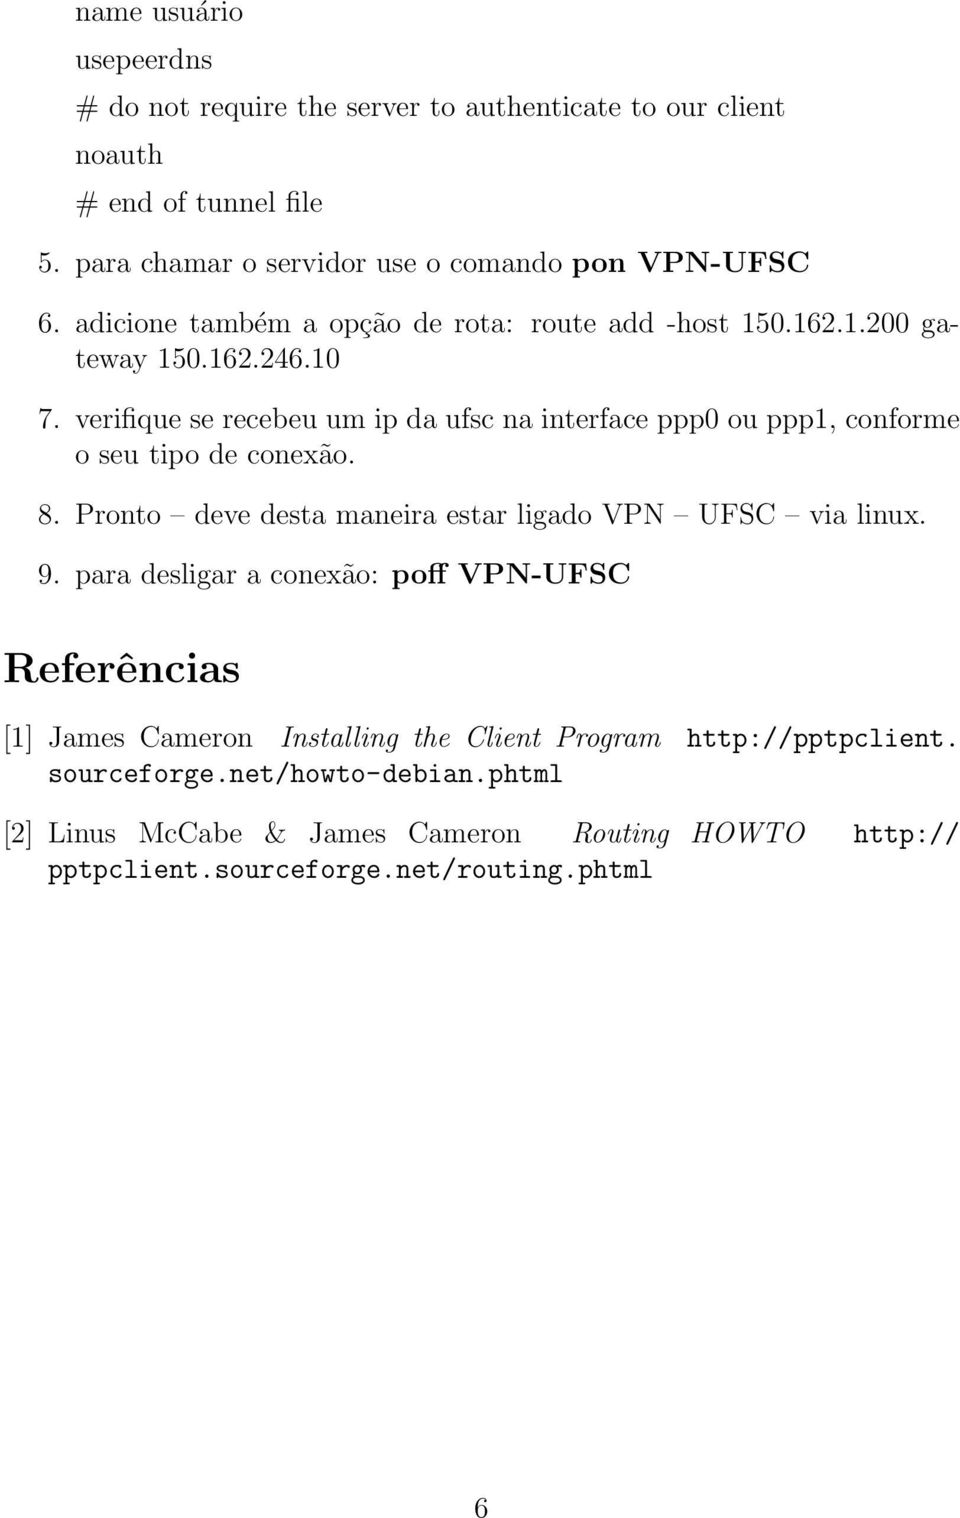 verifique se recebeu um ip da ufsc na interface ppp0 ou ppp1, conforme o seu tipo de conexão. 8. Pronto deve desta maneira estar ligado VPN UFSC via linux. 9.